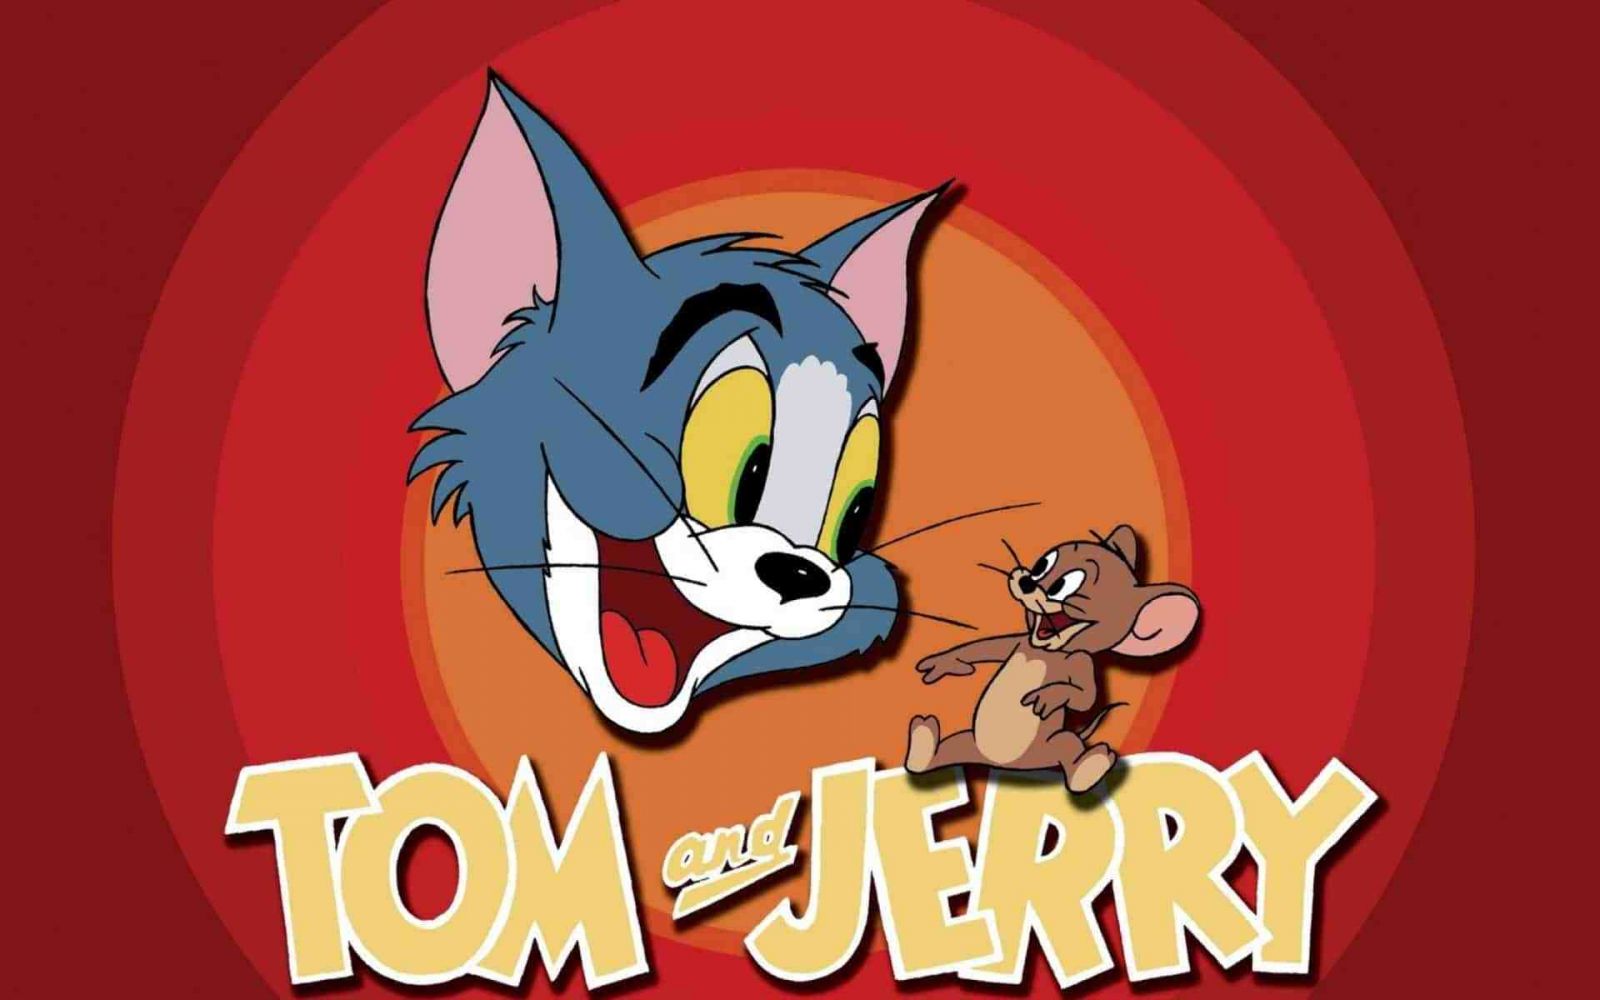 Tom And Jerry Meme - Phim Hoạt Hình Mang Đậm Dấu Ấn Tuổi Thơ - Eu-Vietnam  Business Network (Evbn)